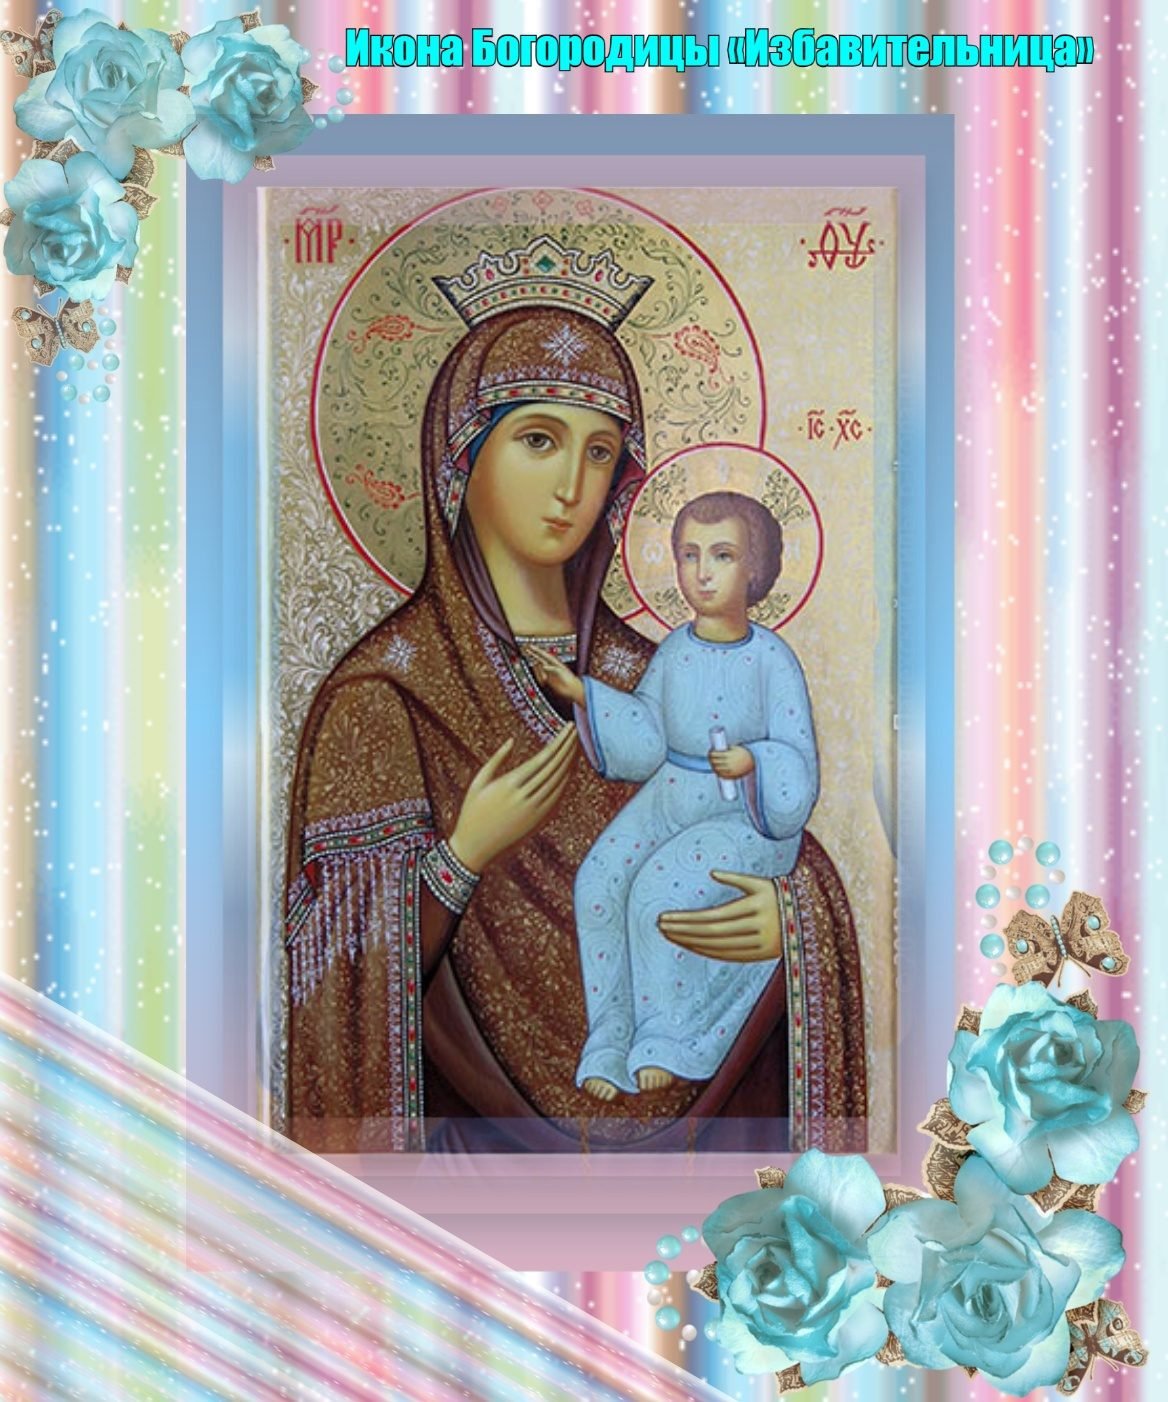 с праздником иконы божией матери избавительница картинки